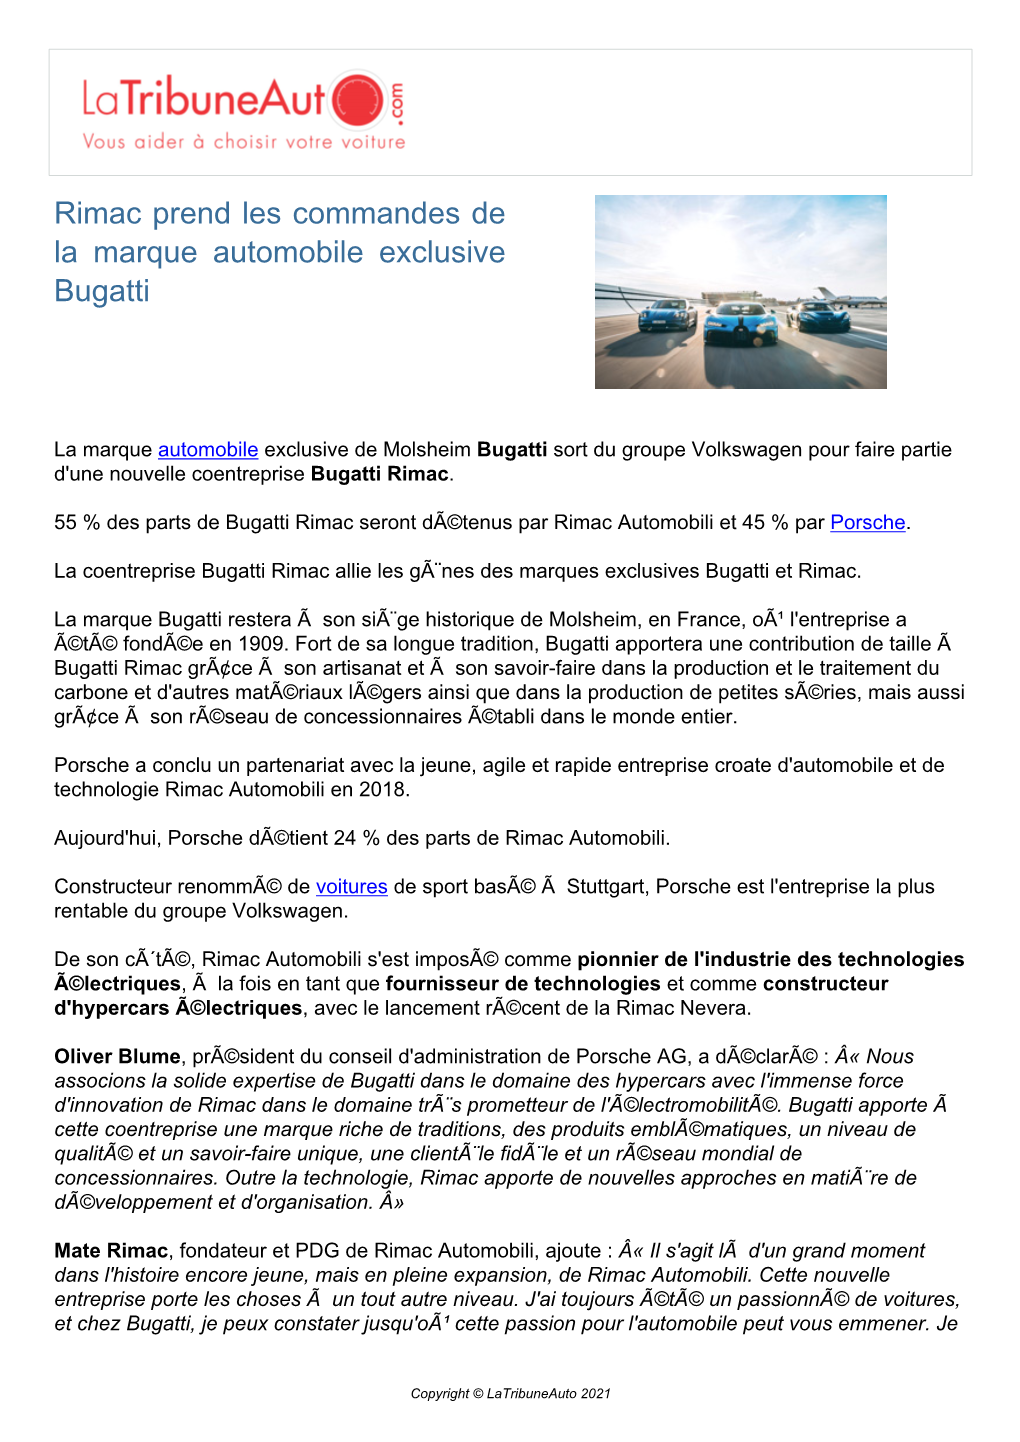 Rimac Prend Les Commandes De La Marque Automobile Exclusive Bugatti